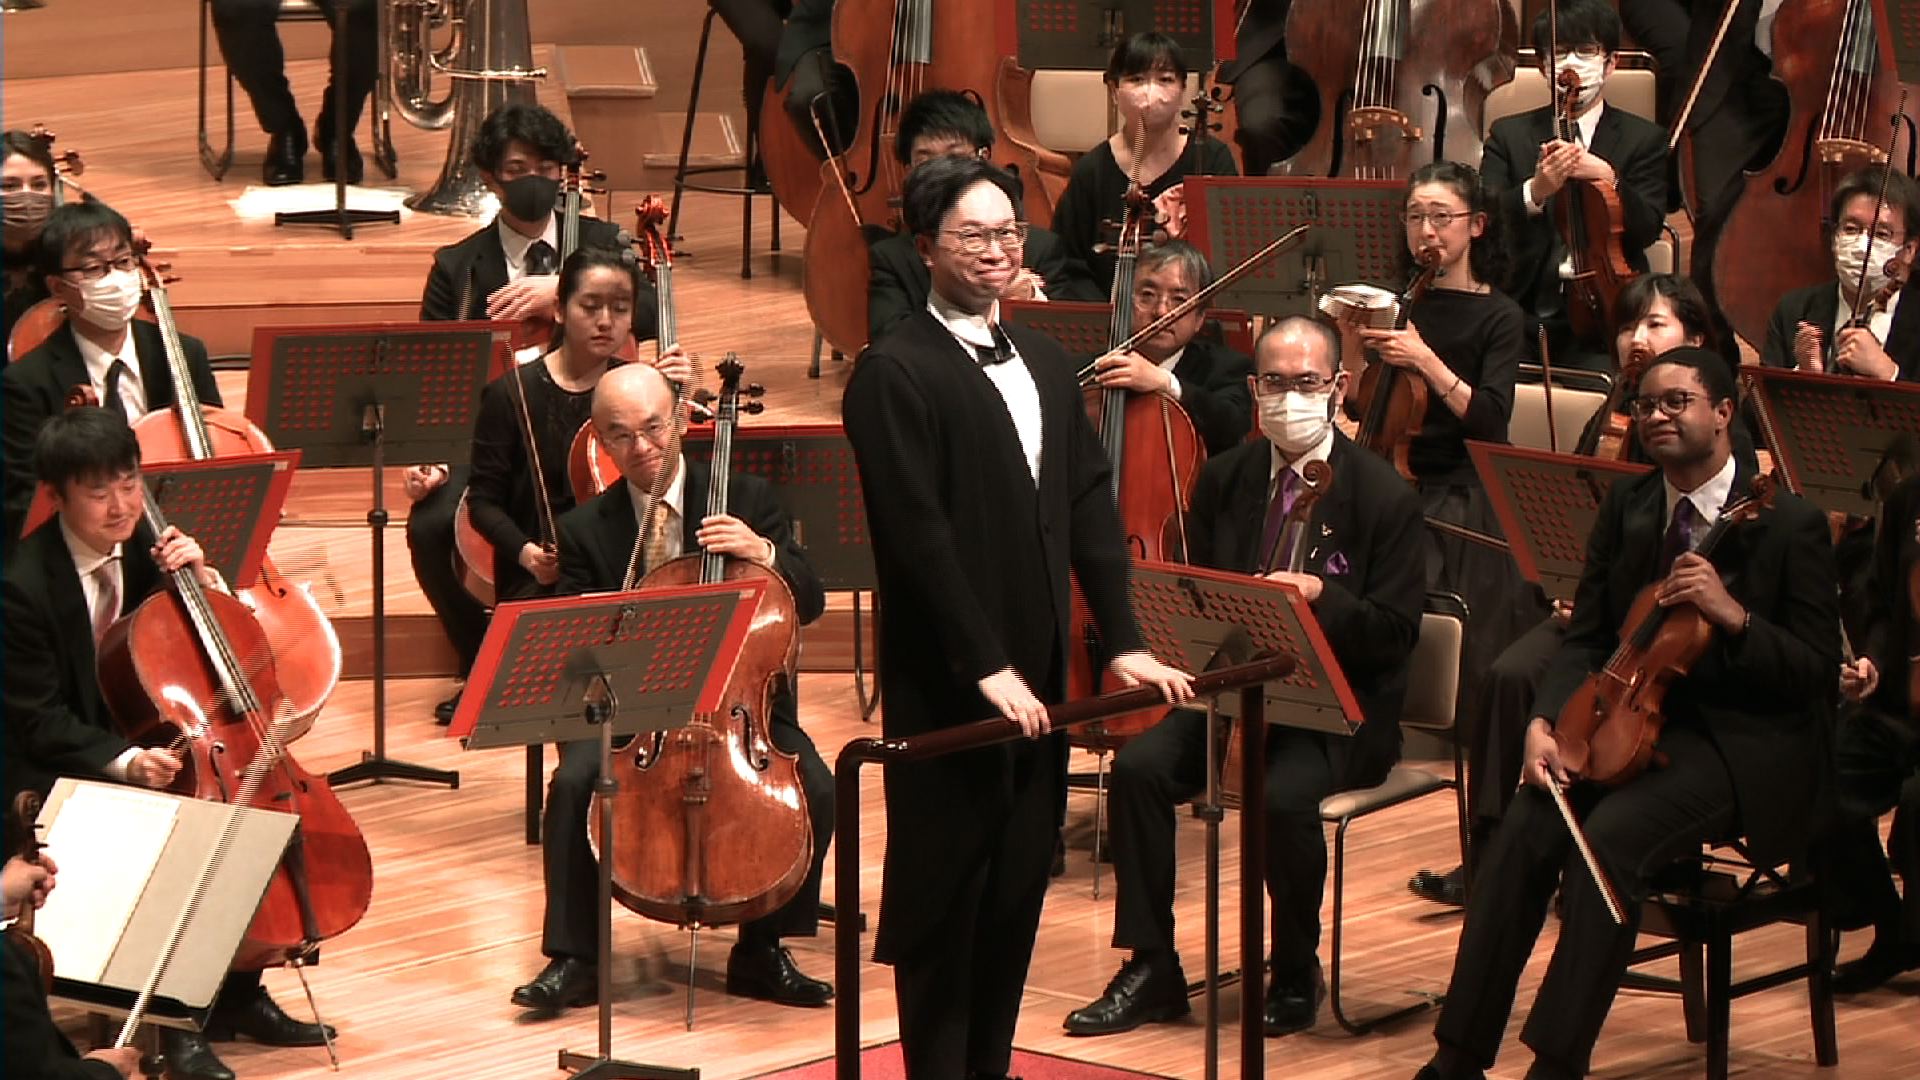 カーチュン・ウォン　オッタビアーノ・クリストーフォリ  日本フィルハーモニー交響楽団  マーラー：交響曲第5番 嬰ハ短調ほか    アルチュニアン：トランペット協奏曲   マーラー：交響曲第5番 嬰ハ短調  2021年12月11日(金)14時開演　サントリーホール  この映像は日本国内でのみ視聴再生が可能です。ご購入の際はご注意ください。    <span>Kahchun WONG, Ottaviano CRISTOFOLI  Japan Philharmonic Orchestra, JPO  G. MAHLER: Symphony No.5 etc    A. ARUTYUNYAN: Concerto for Trumpet and Orchestra　  G. MAHLER: Symphony No.5 in c-sharp minor  Friday, Dec. 11, 2021 14:00(JST) Curtain Time, Suntory Hall  Viewing in Japan only.  </span>